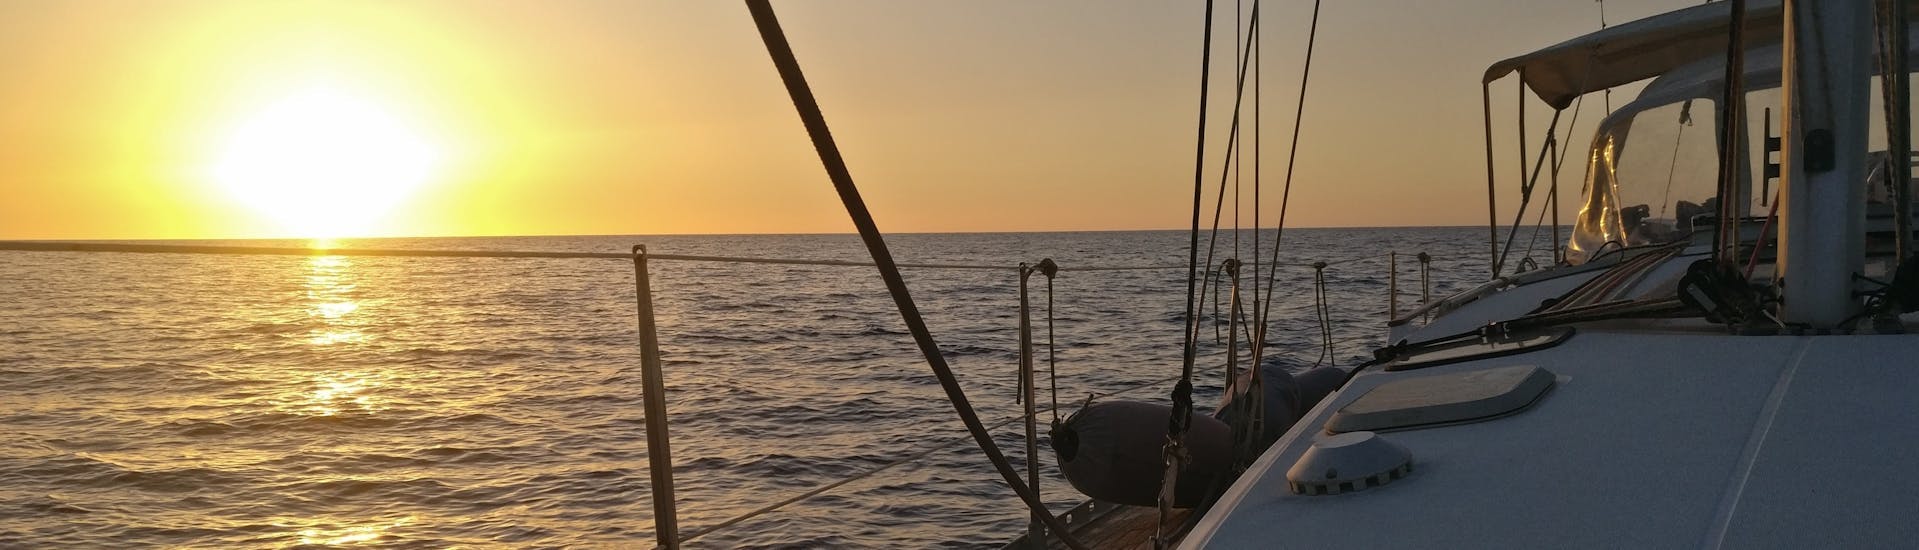 Excursión privada en barco de pesca al curricán en Salento.